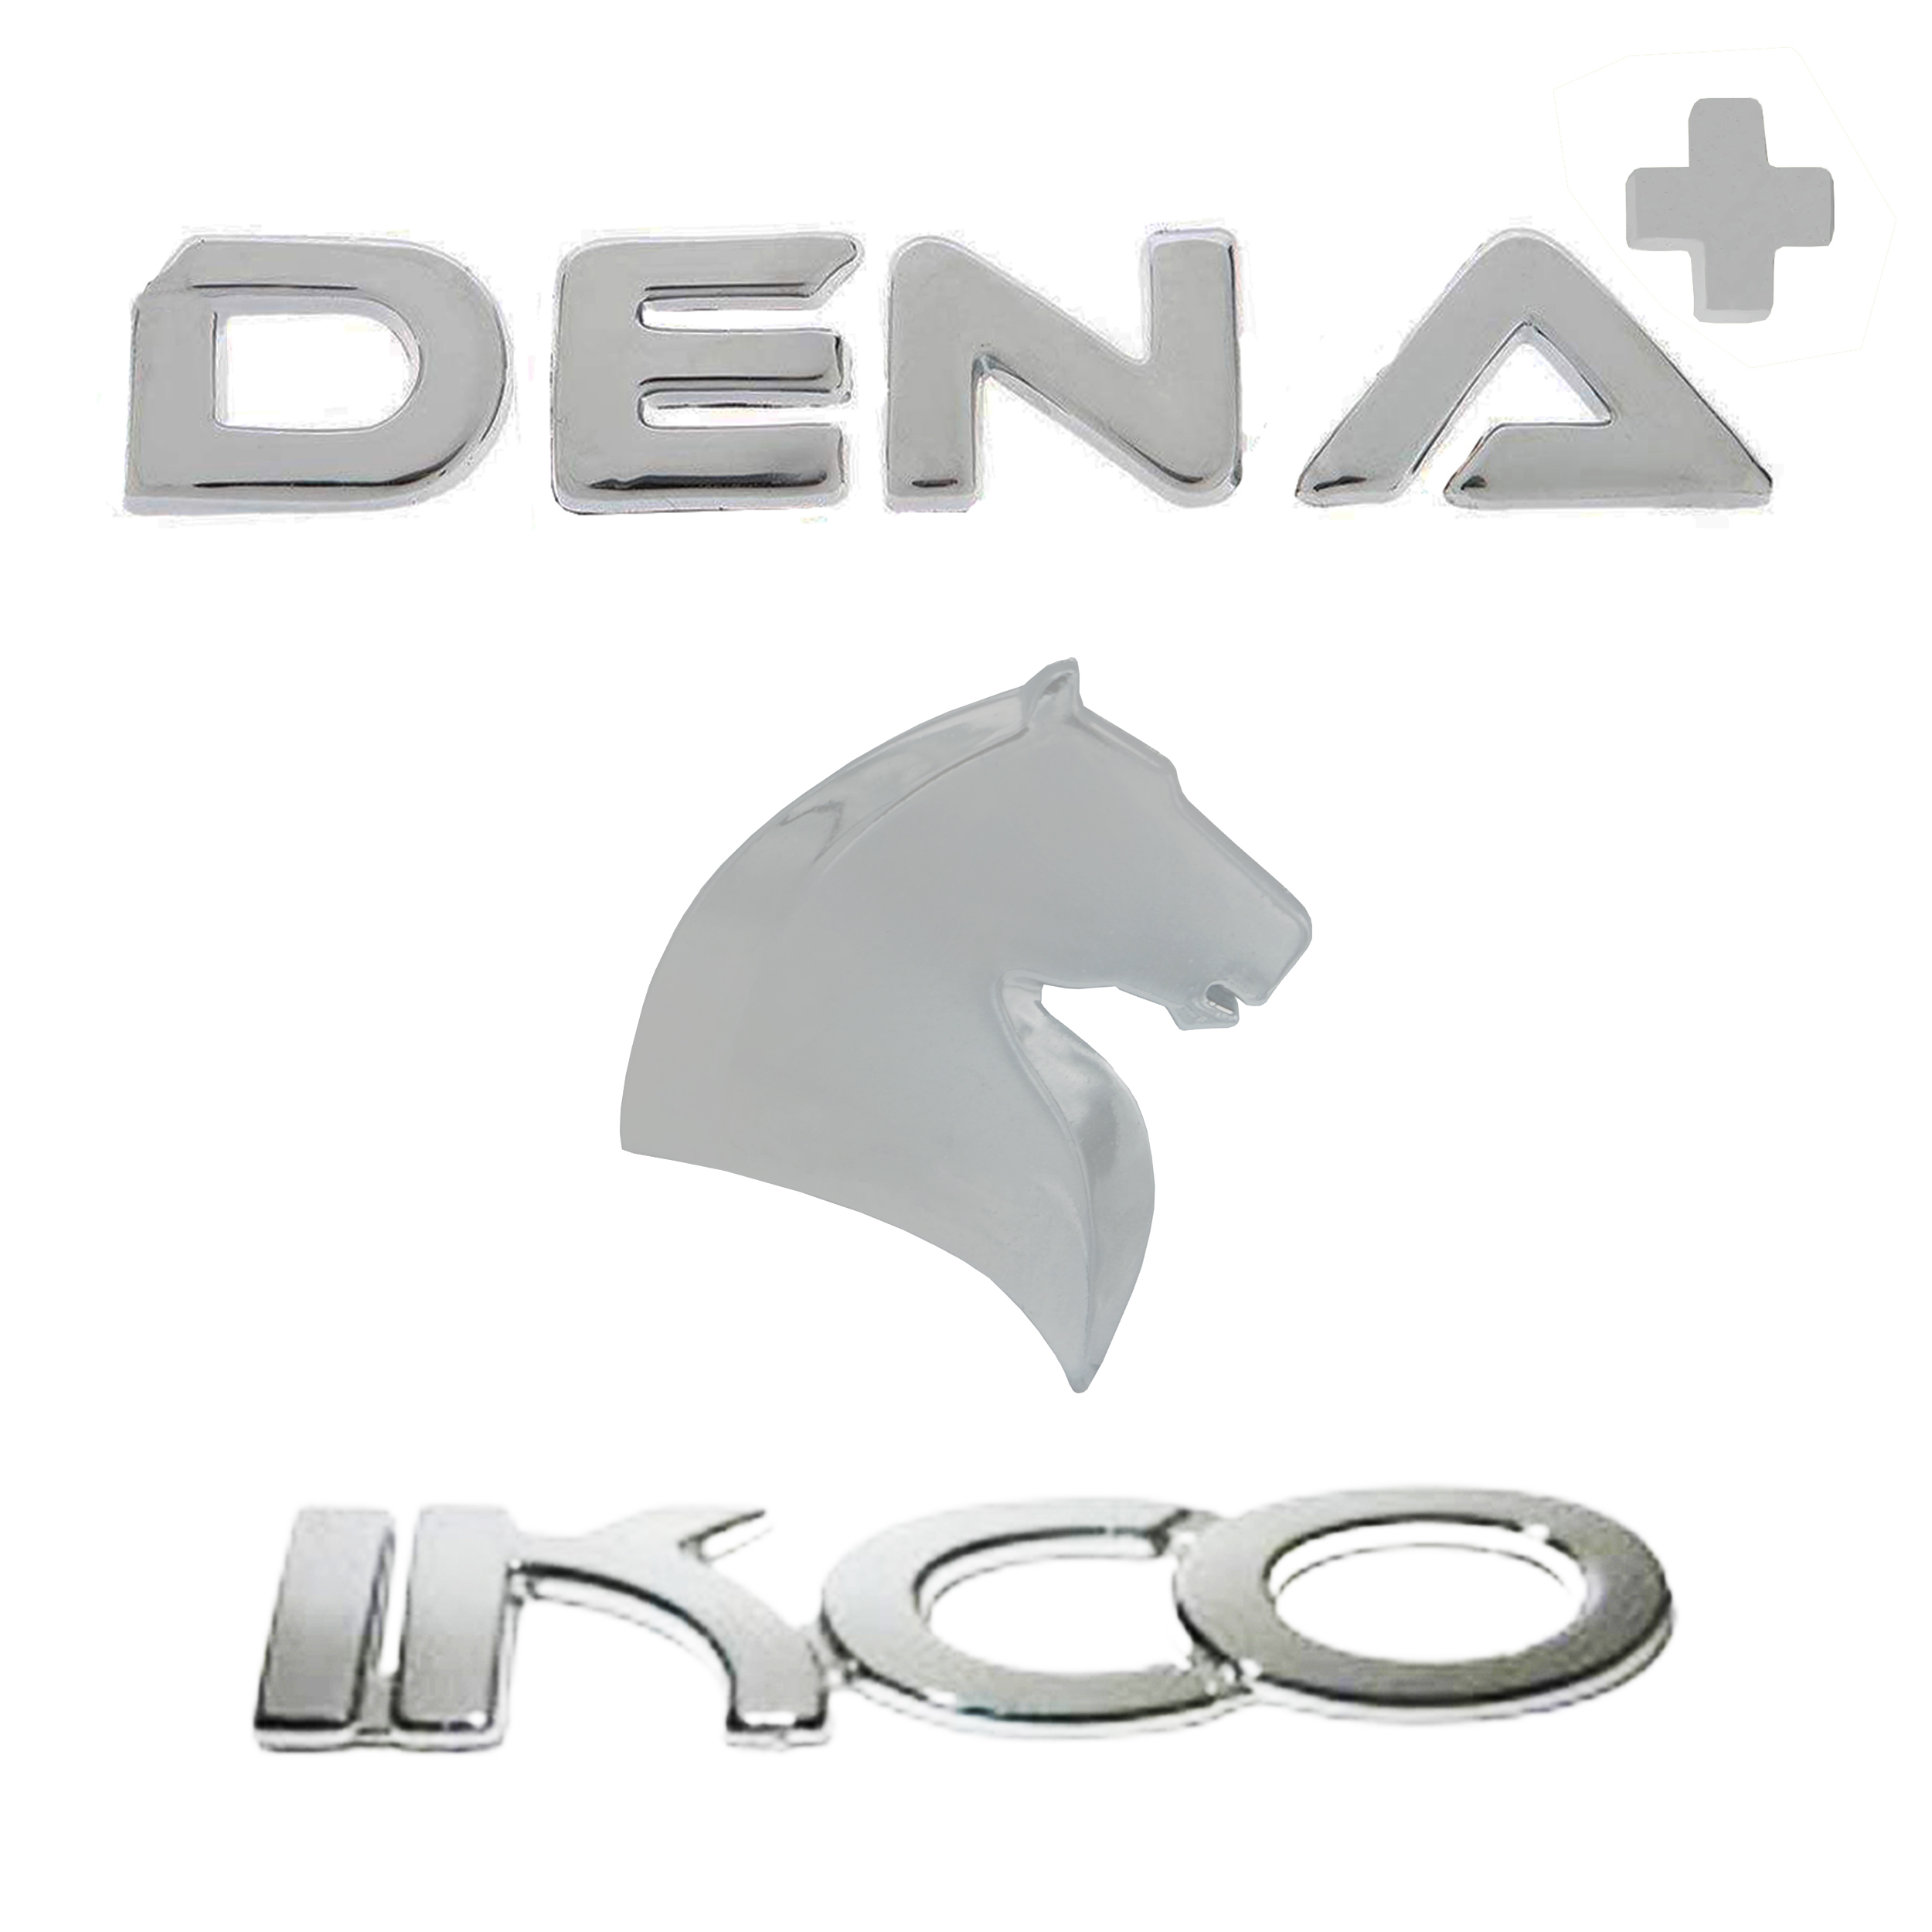  آرم صندوق عقب خودرو بیلگین مدل dena+3 مناسب برای دنا پلاس مجموعه 3 عددی